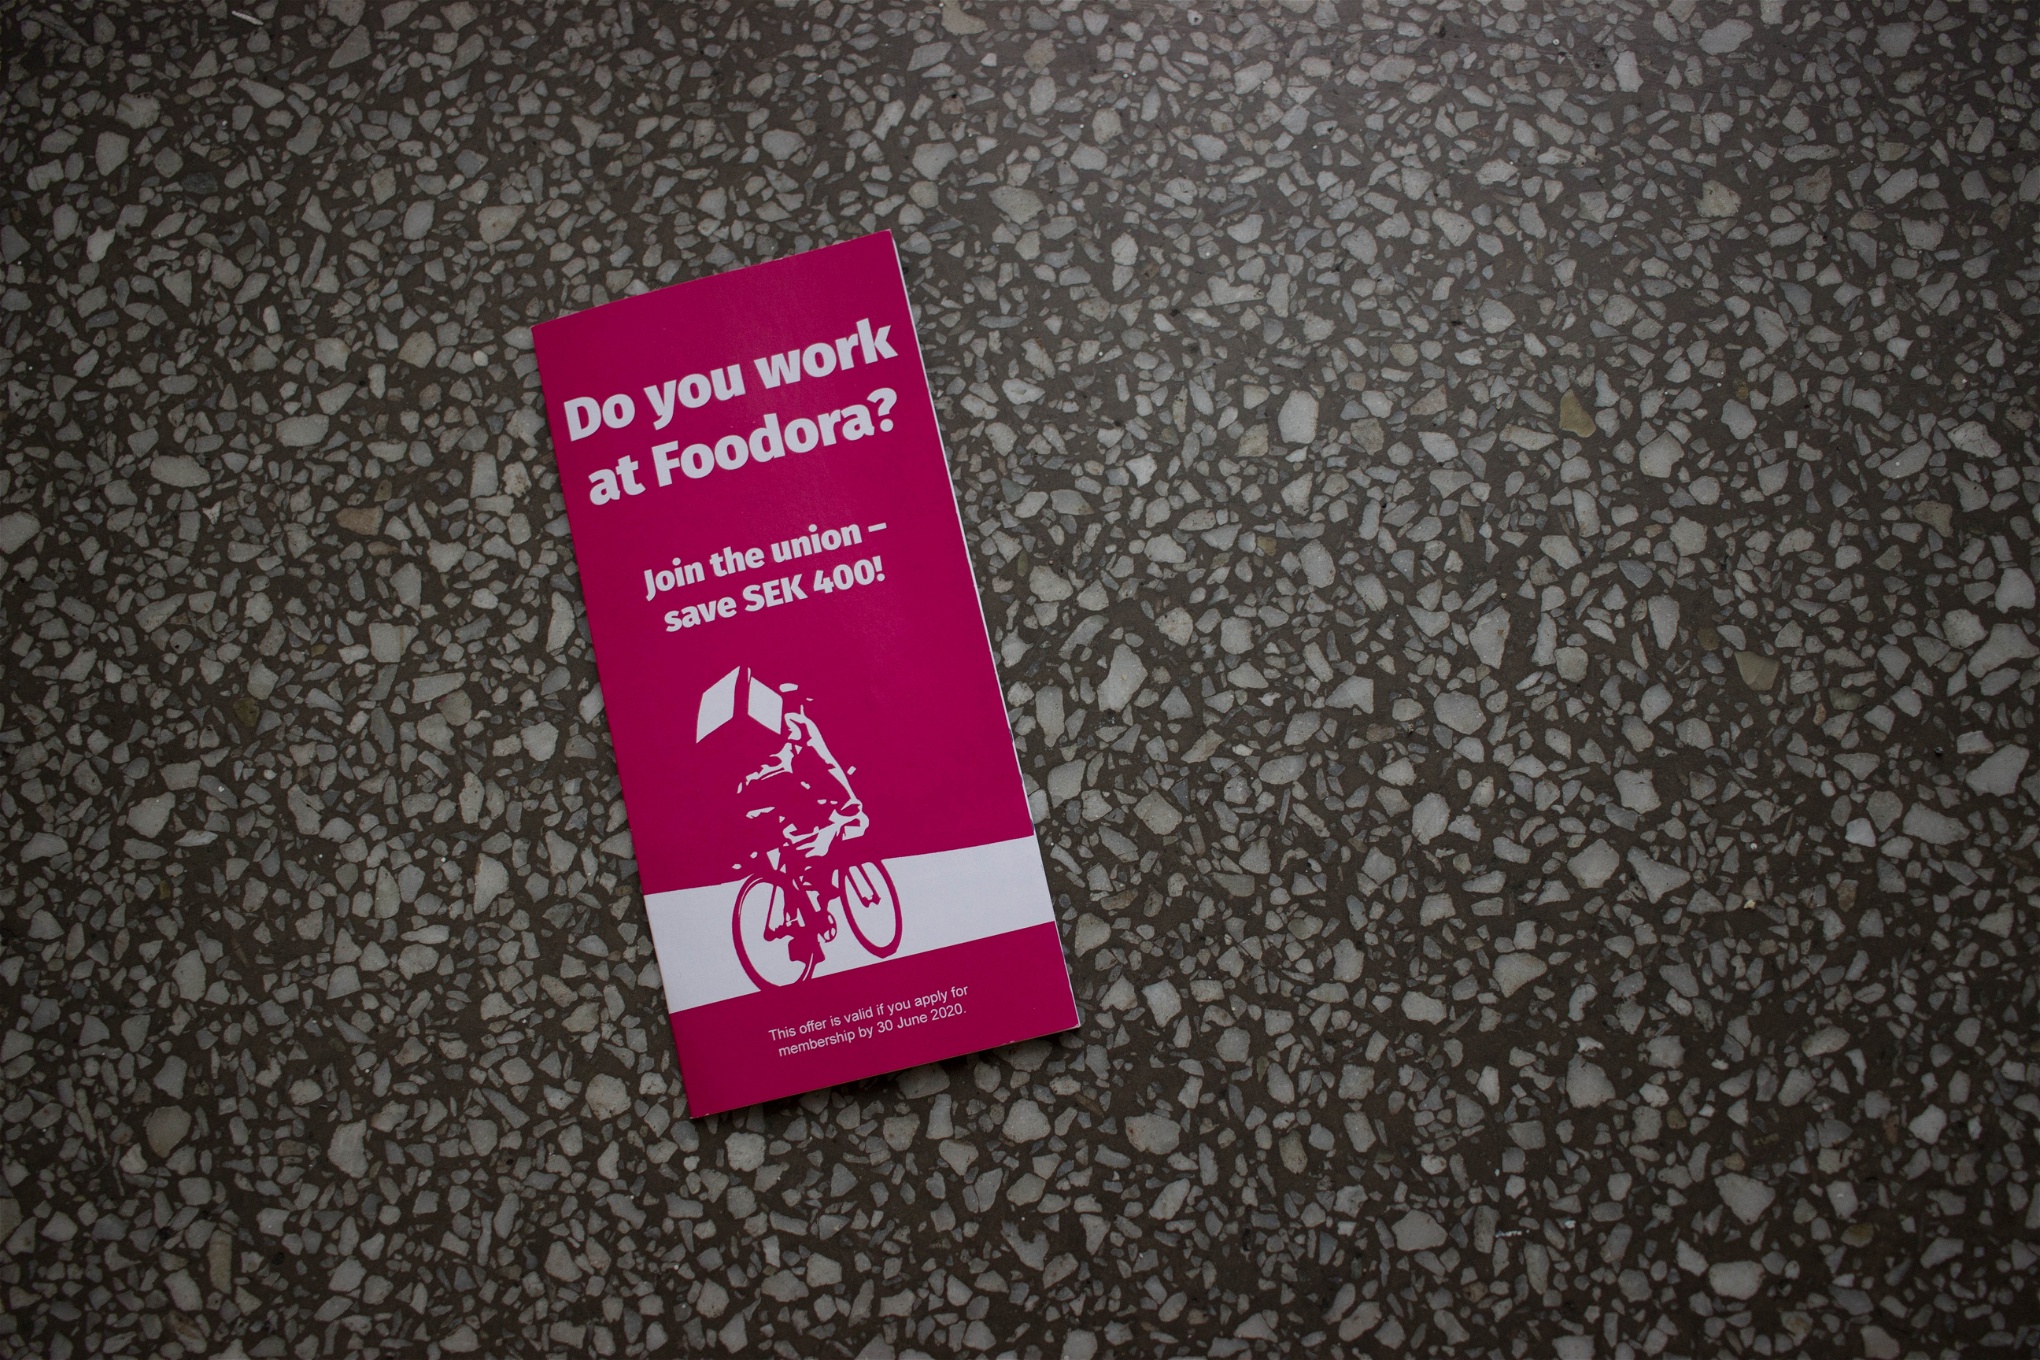 Foto: Katja PaloTransportarbetareförbundet har inlett en kampanj för att få Foodoras bud att gå med i facket. 